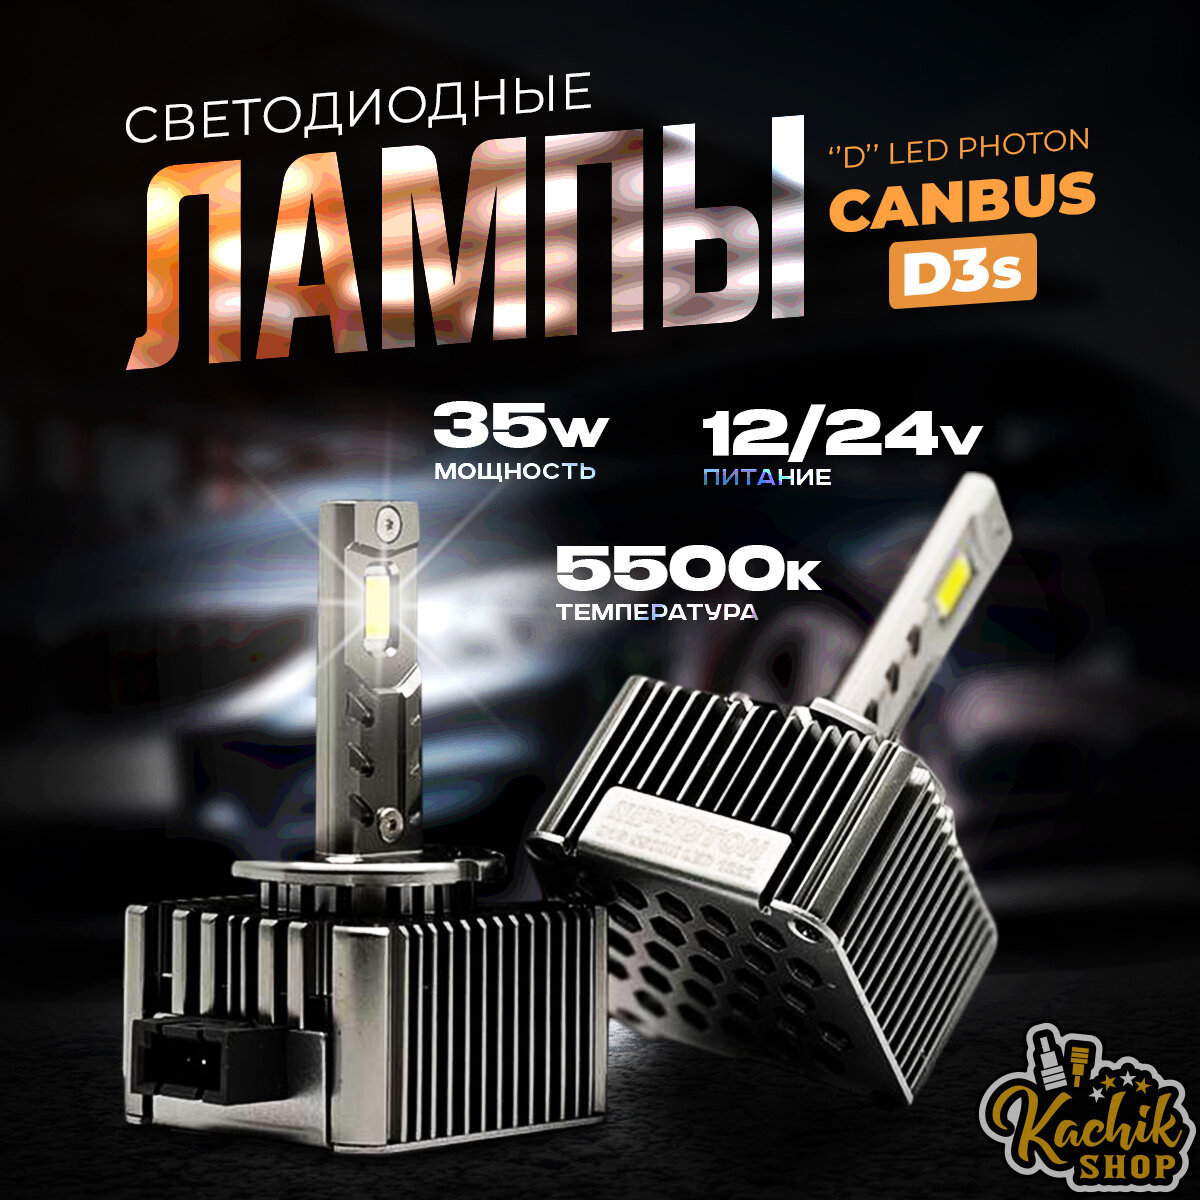 Светодиодные автомобильные лампы "D" LED PHOTON "Canbus" D3s. 12/24V 35W 5500K 2шт.